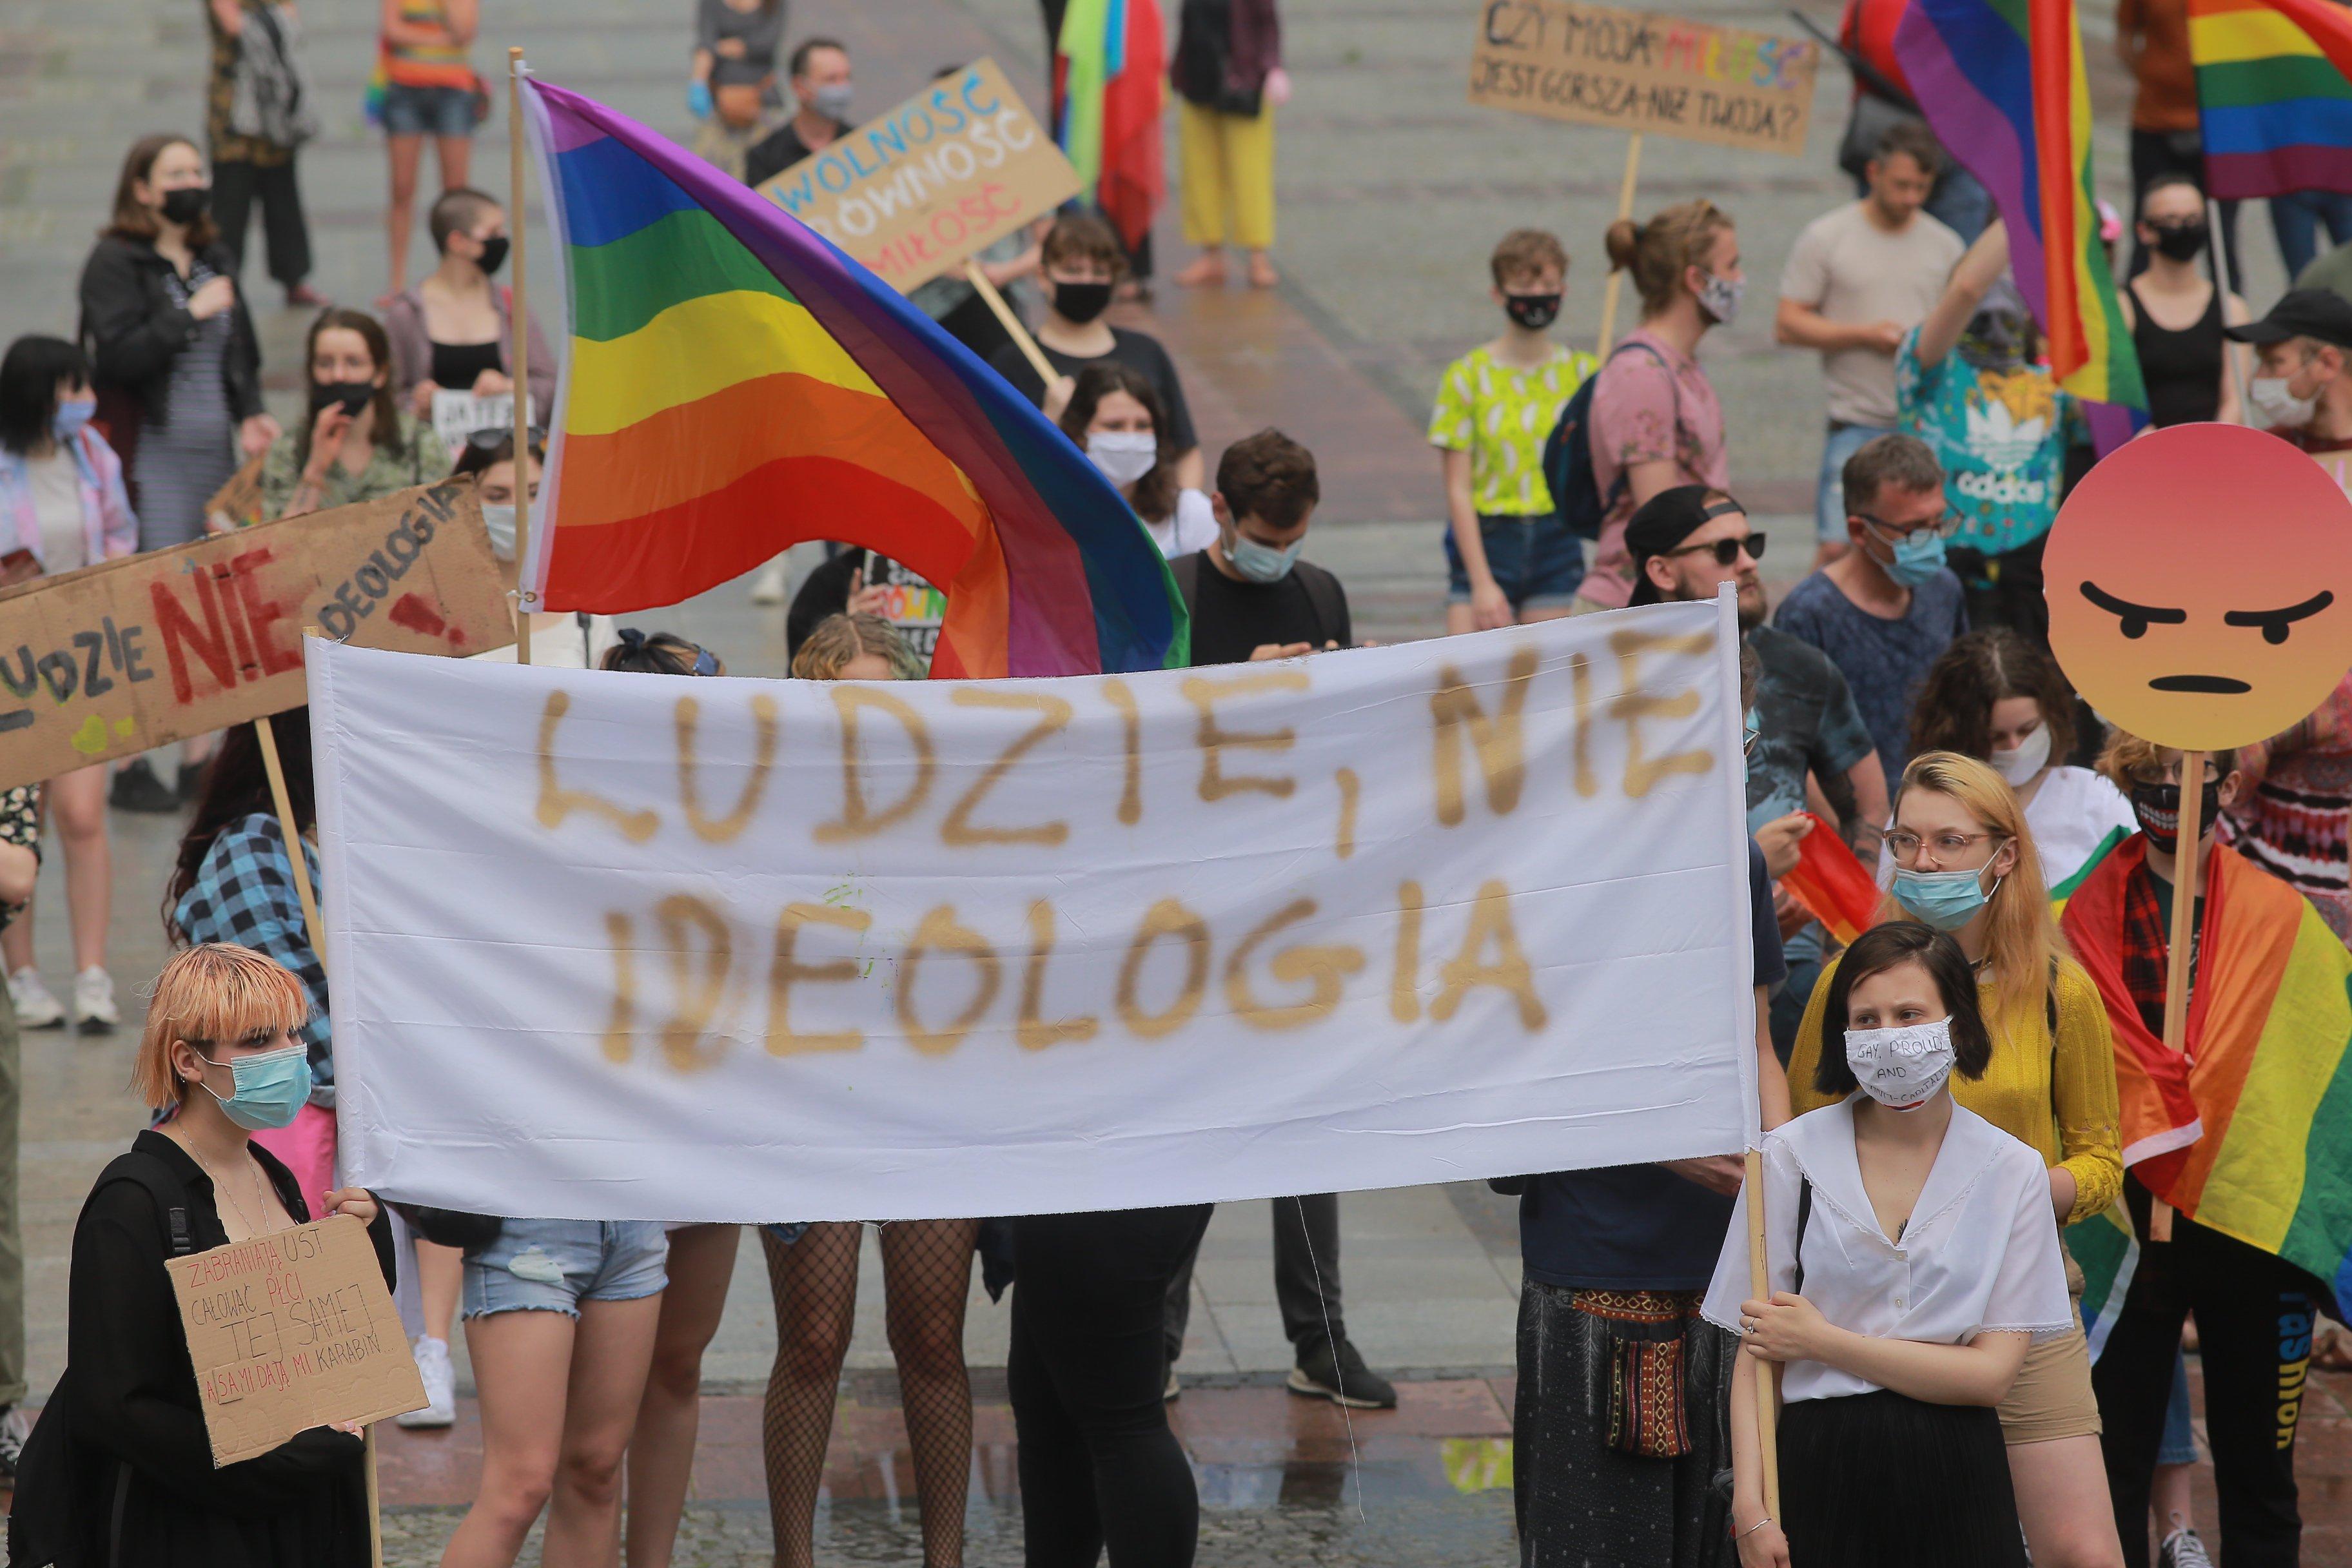 Na zdjęciu uczestnicy marszu równości w Białymsutku niosący duży transparent z hasłem "Ludzie nie ideologia"